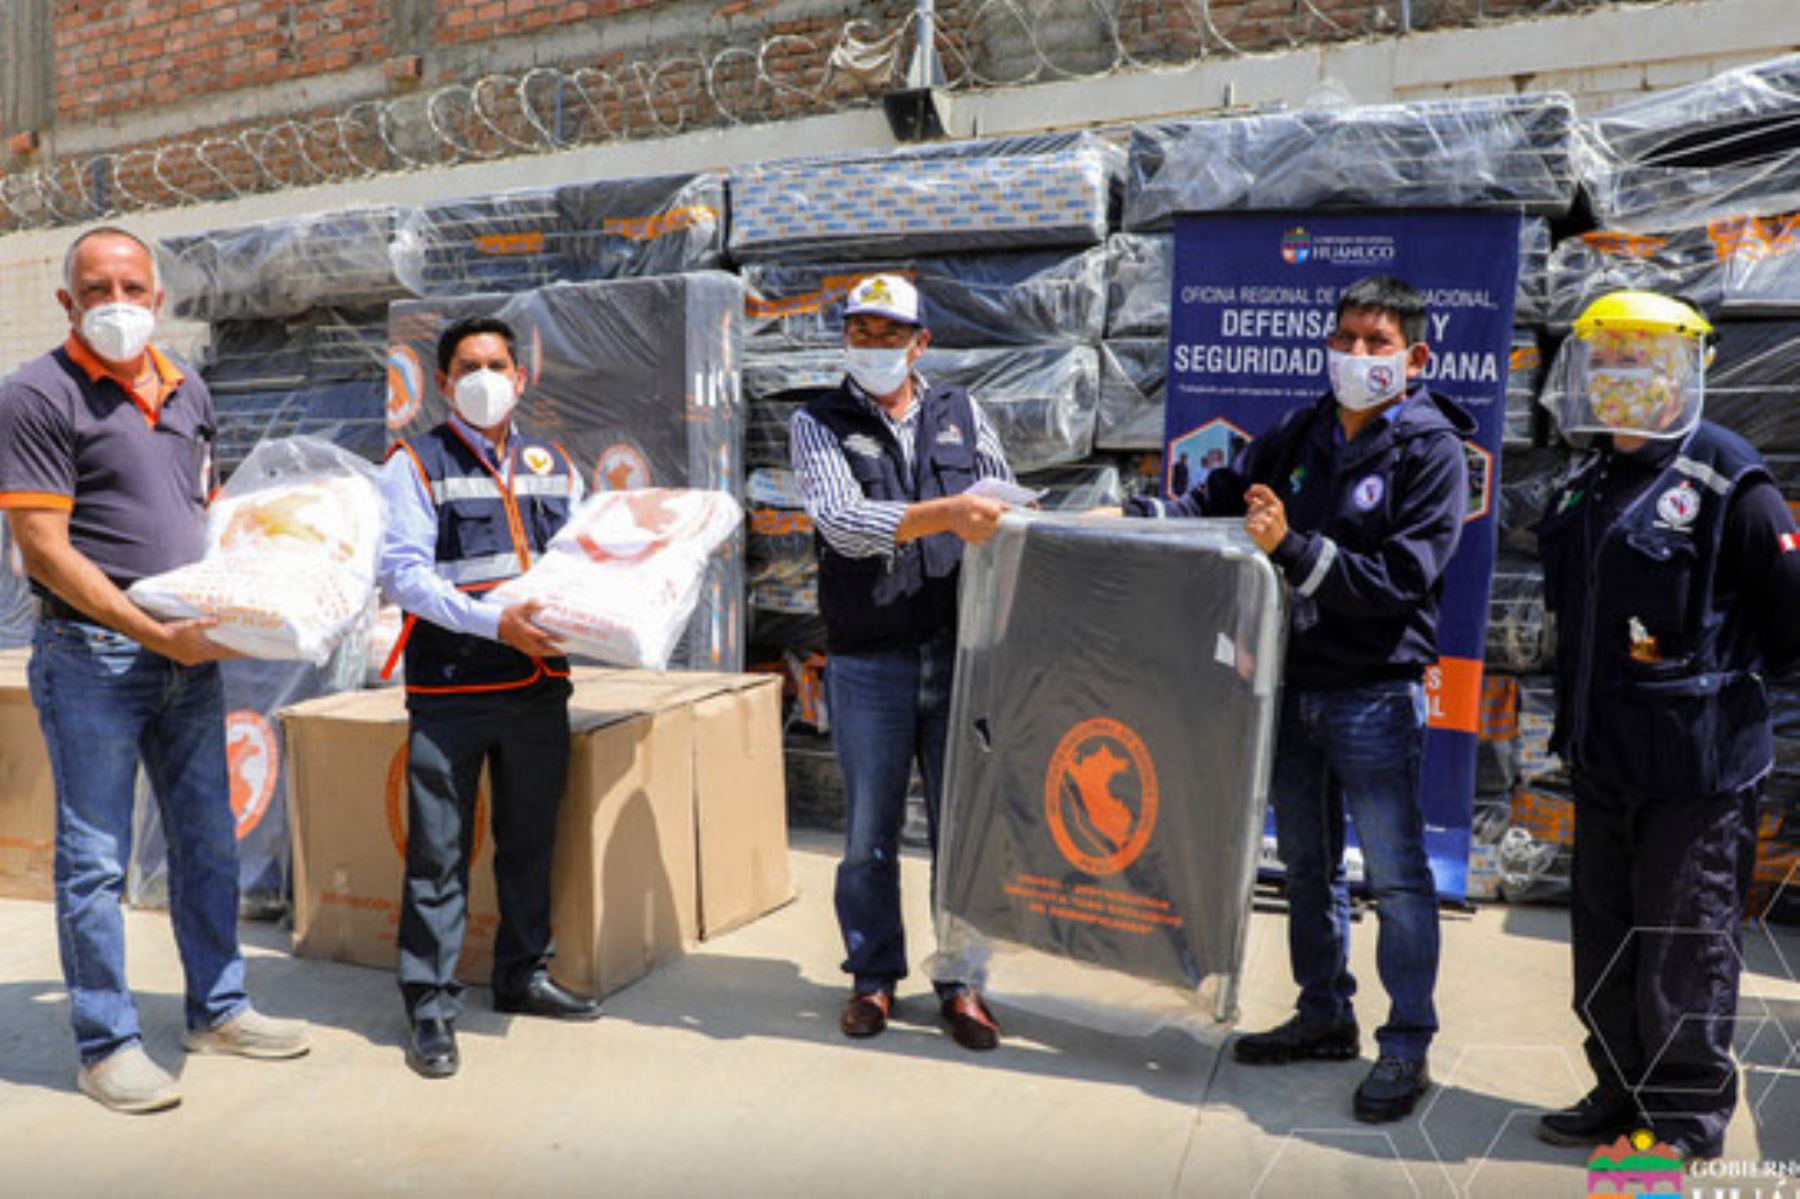 La Diresa Huánuco recibió ayuda humanitaria para fortalecer la lucha contra el covid-19. Foto: ANDINA/Difusión